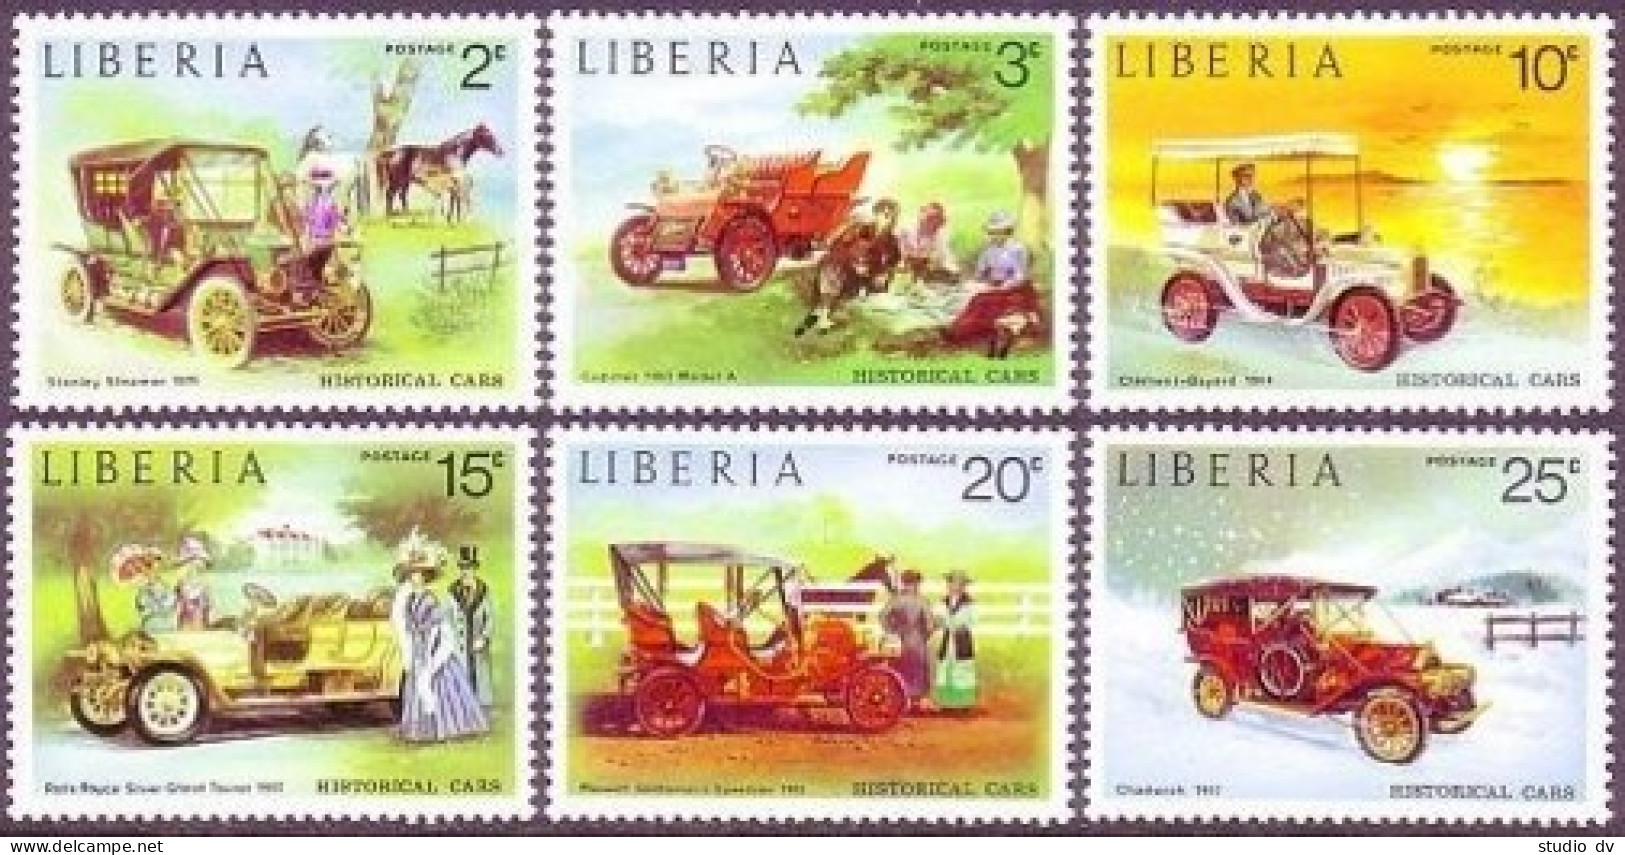 Liberia 647-652,C199,MNH.Michel 889-894,Bl.68. Classic Automobiles,1973. - Liberia